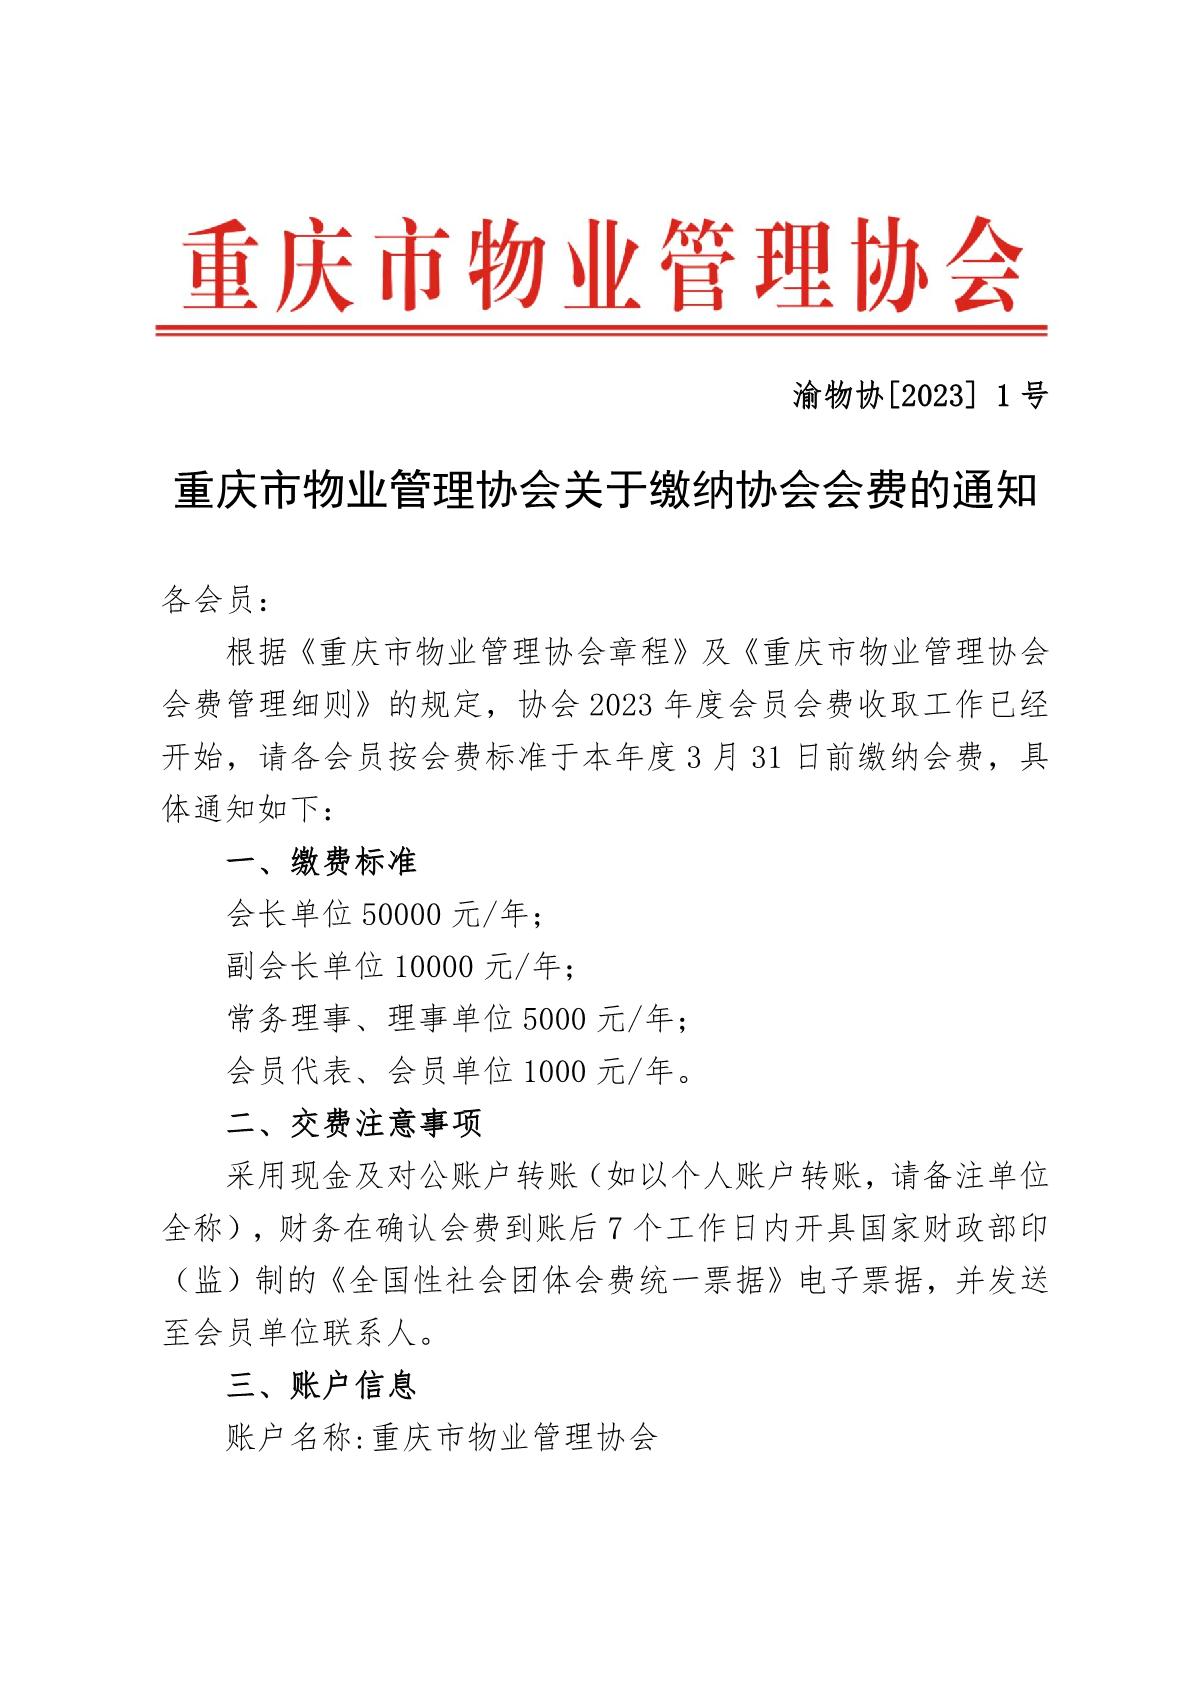 渝物协[2023]1号重庆市物业管理协会关于缴纳协会会费的通知_1.JPG